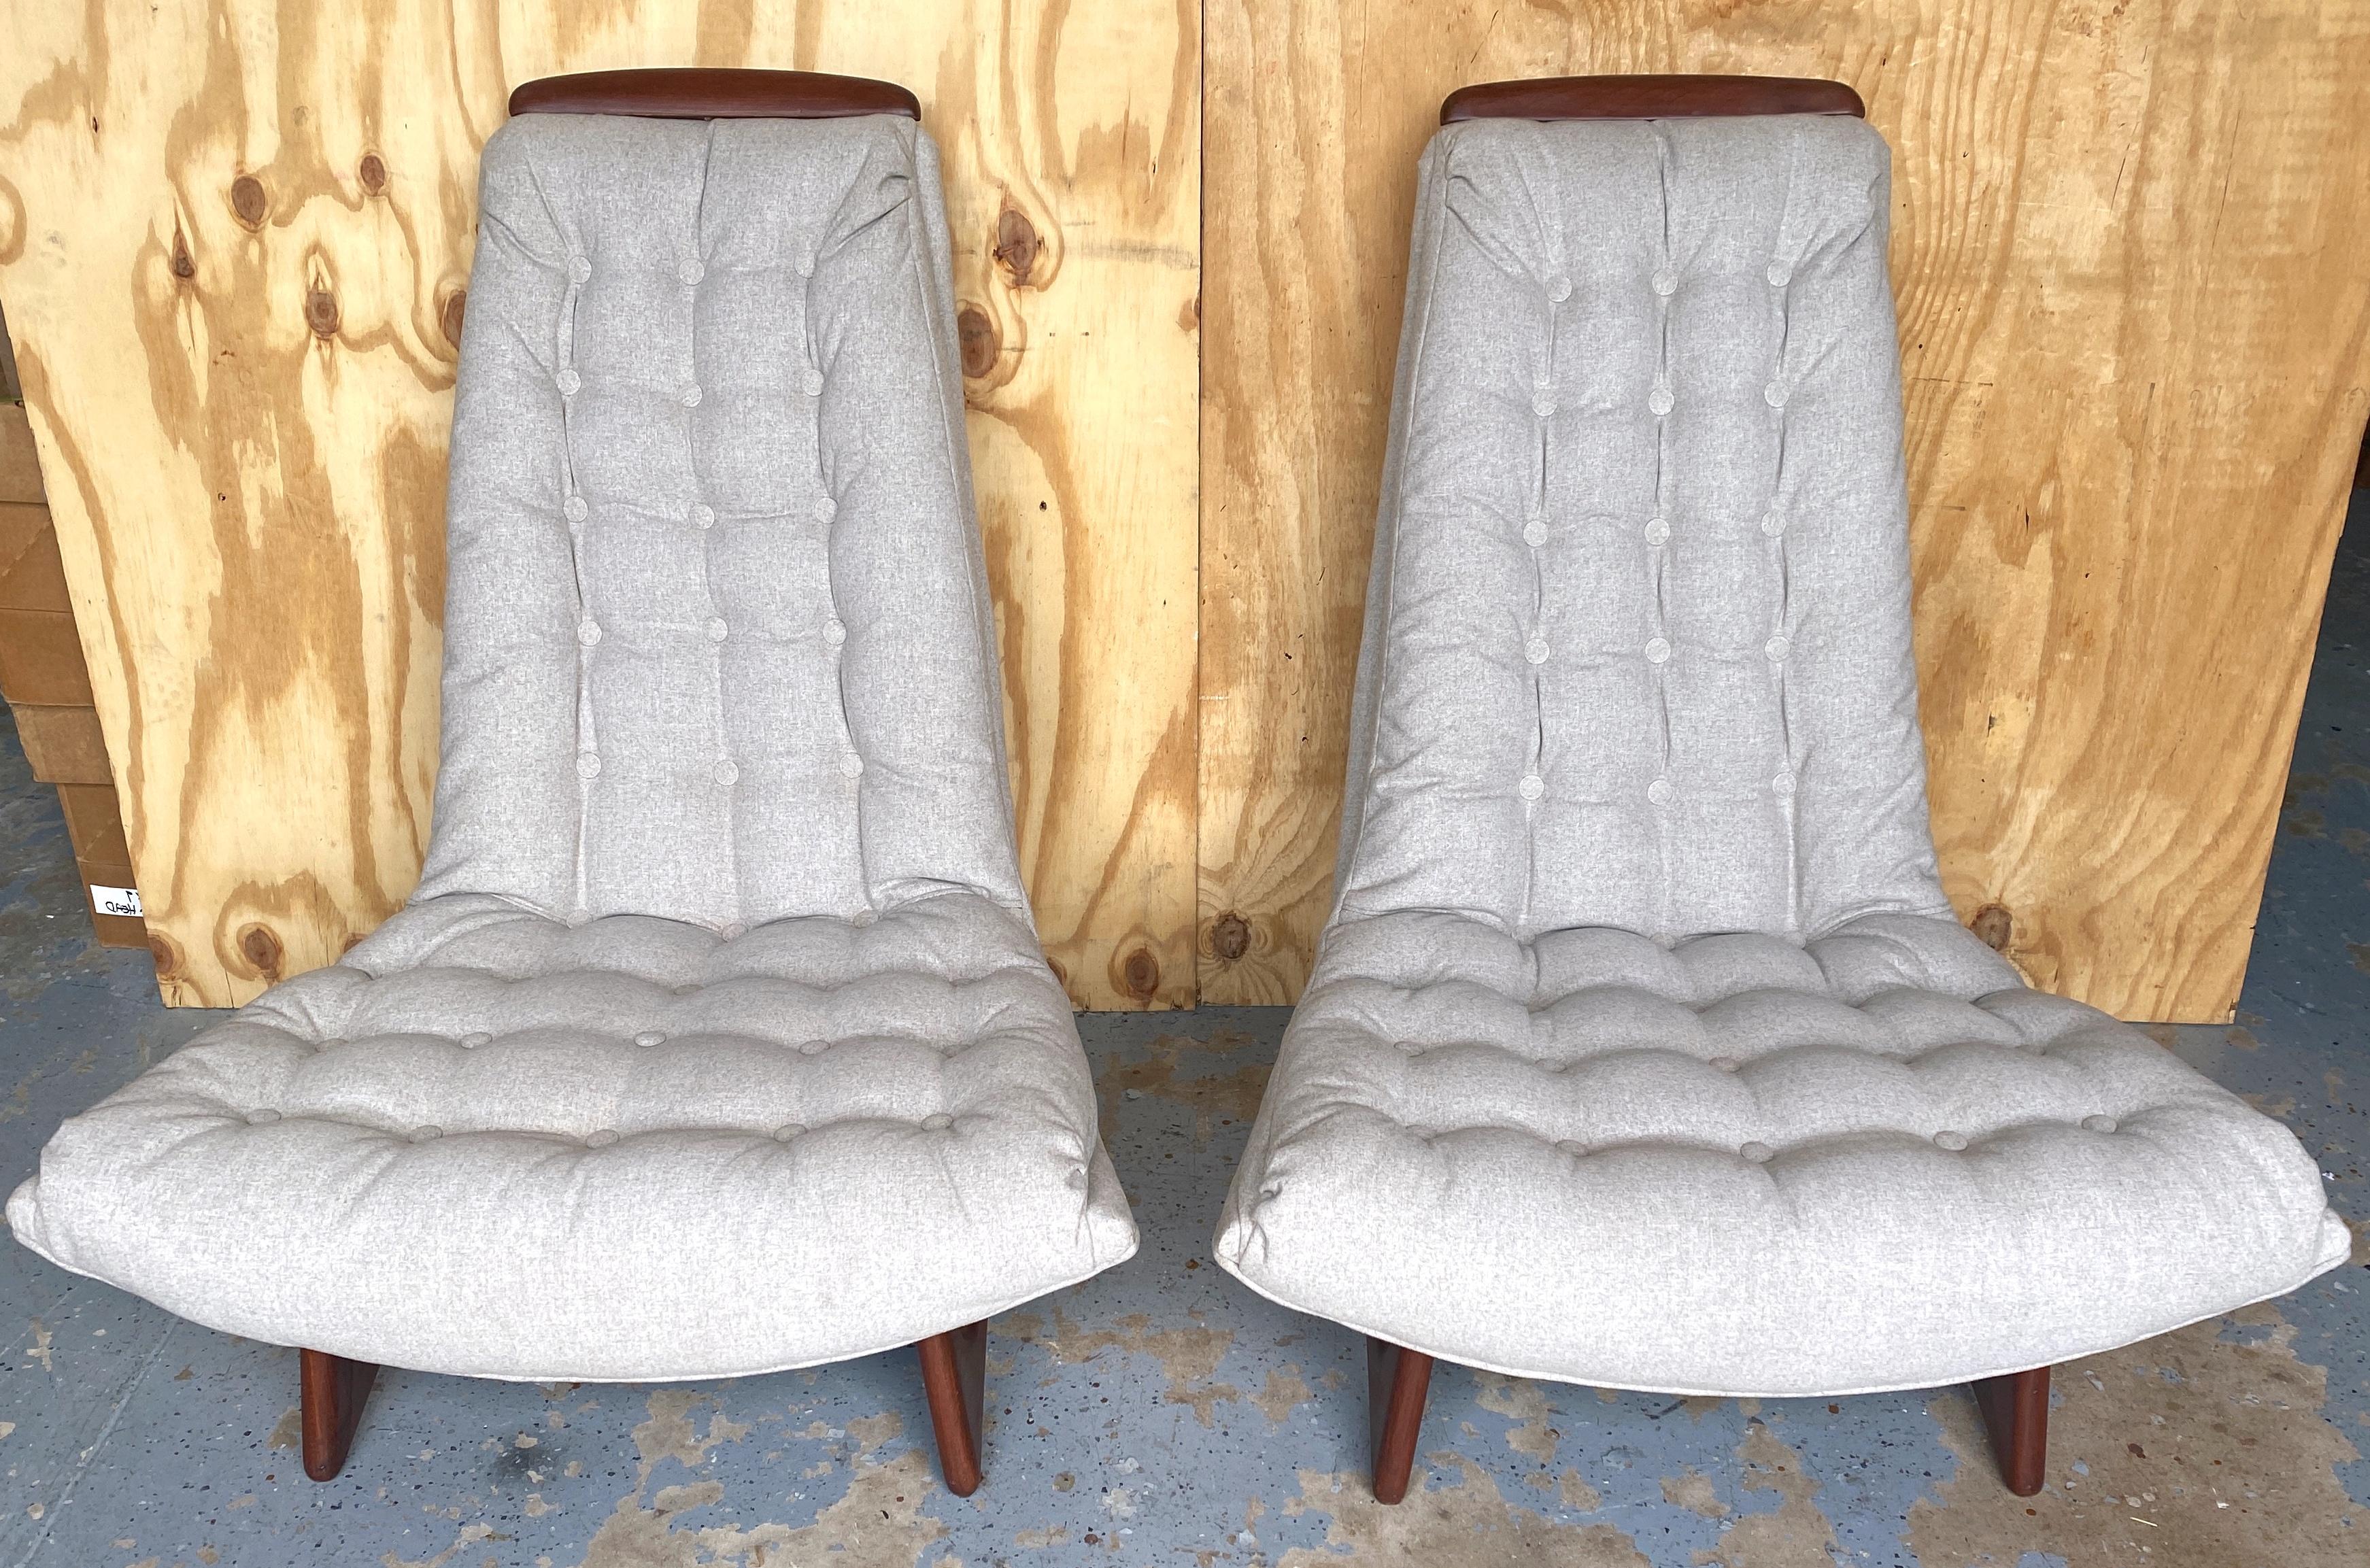 Ein Paar Gondola Club/ Lounge Chairs, Adrian Pearsall für Craft Associates zugeschrieben
Unmarkiert, zugeschrieben Adrian Pearsall (1925-2011) USA, CIRCA 1960er Jahre

Ein auffälliges Paar Gondel-Club-/Lounge-Stühle, das dem berühmten  Designer